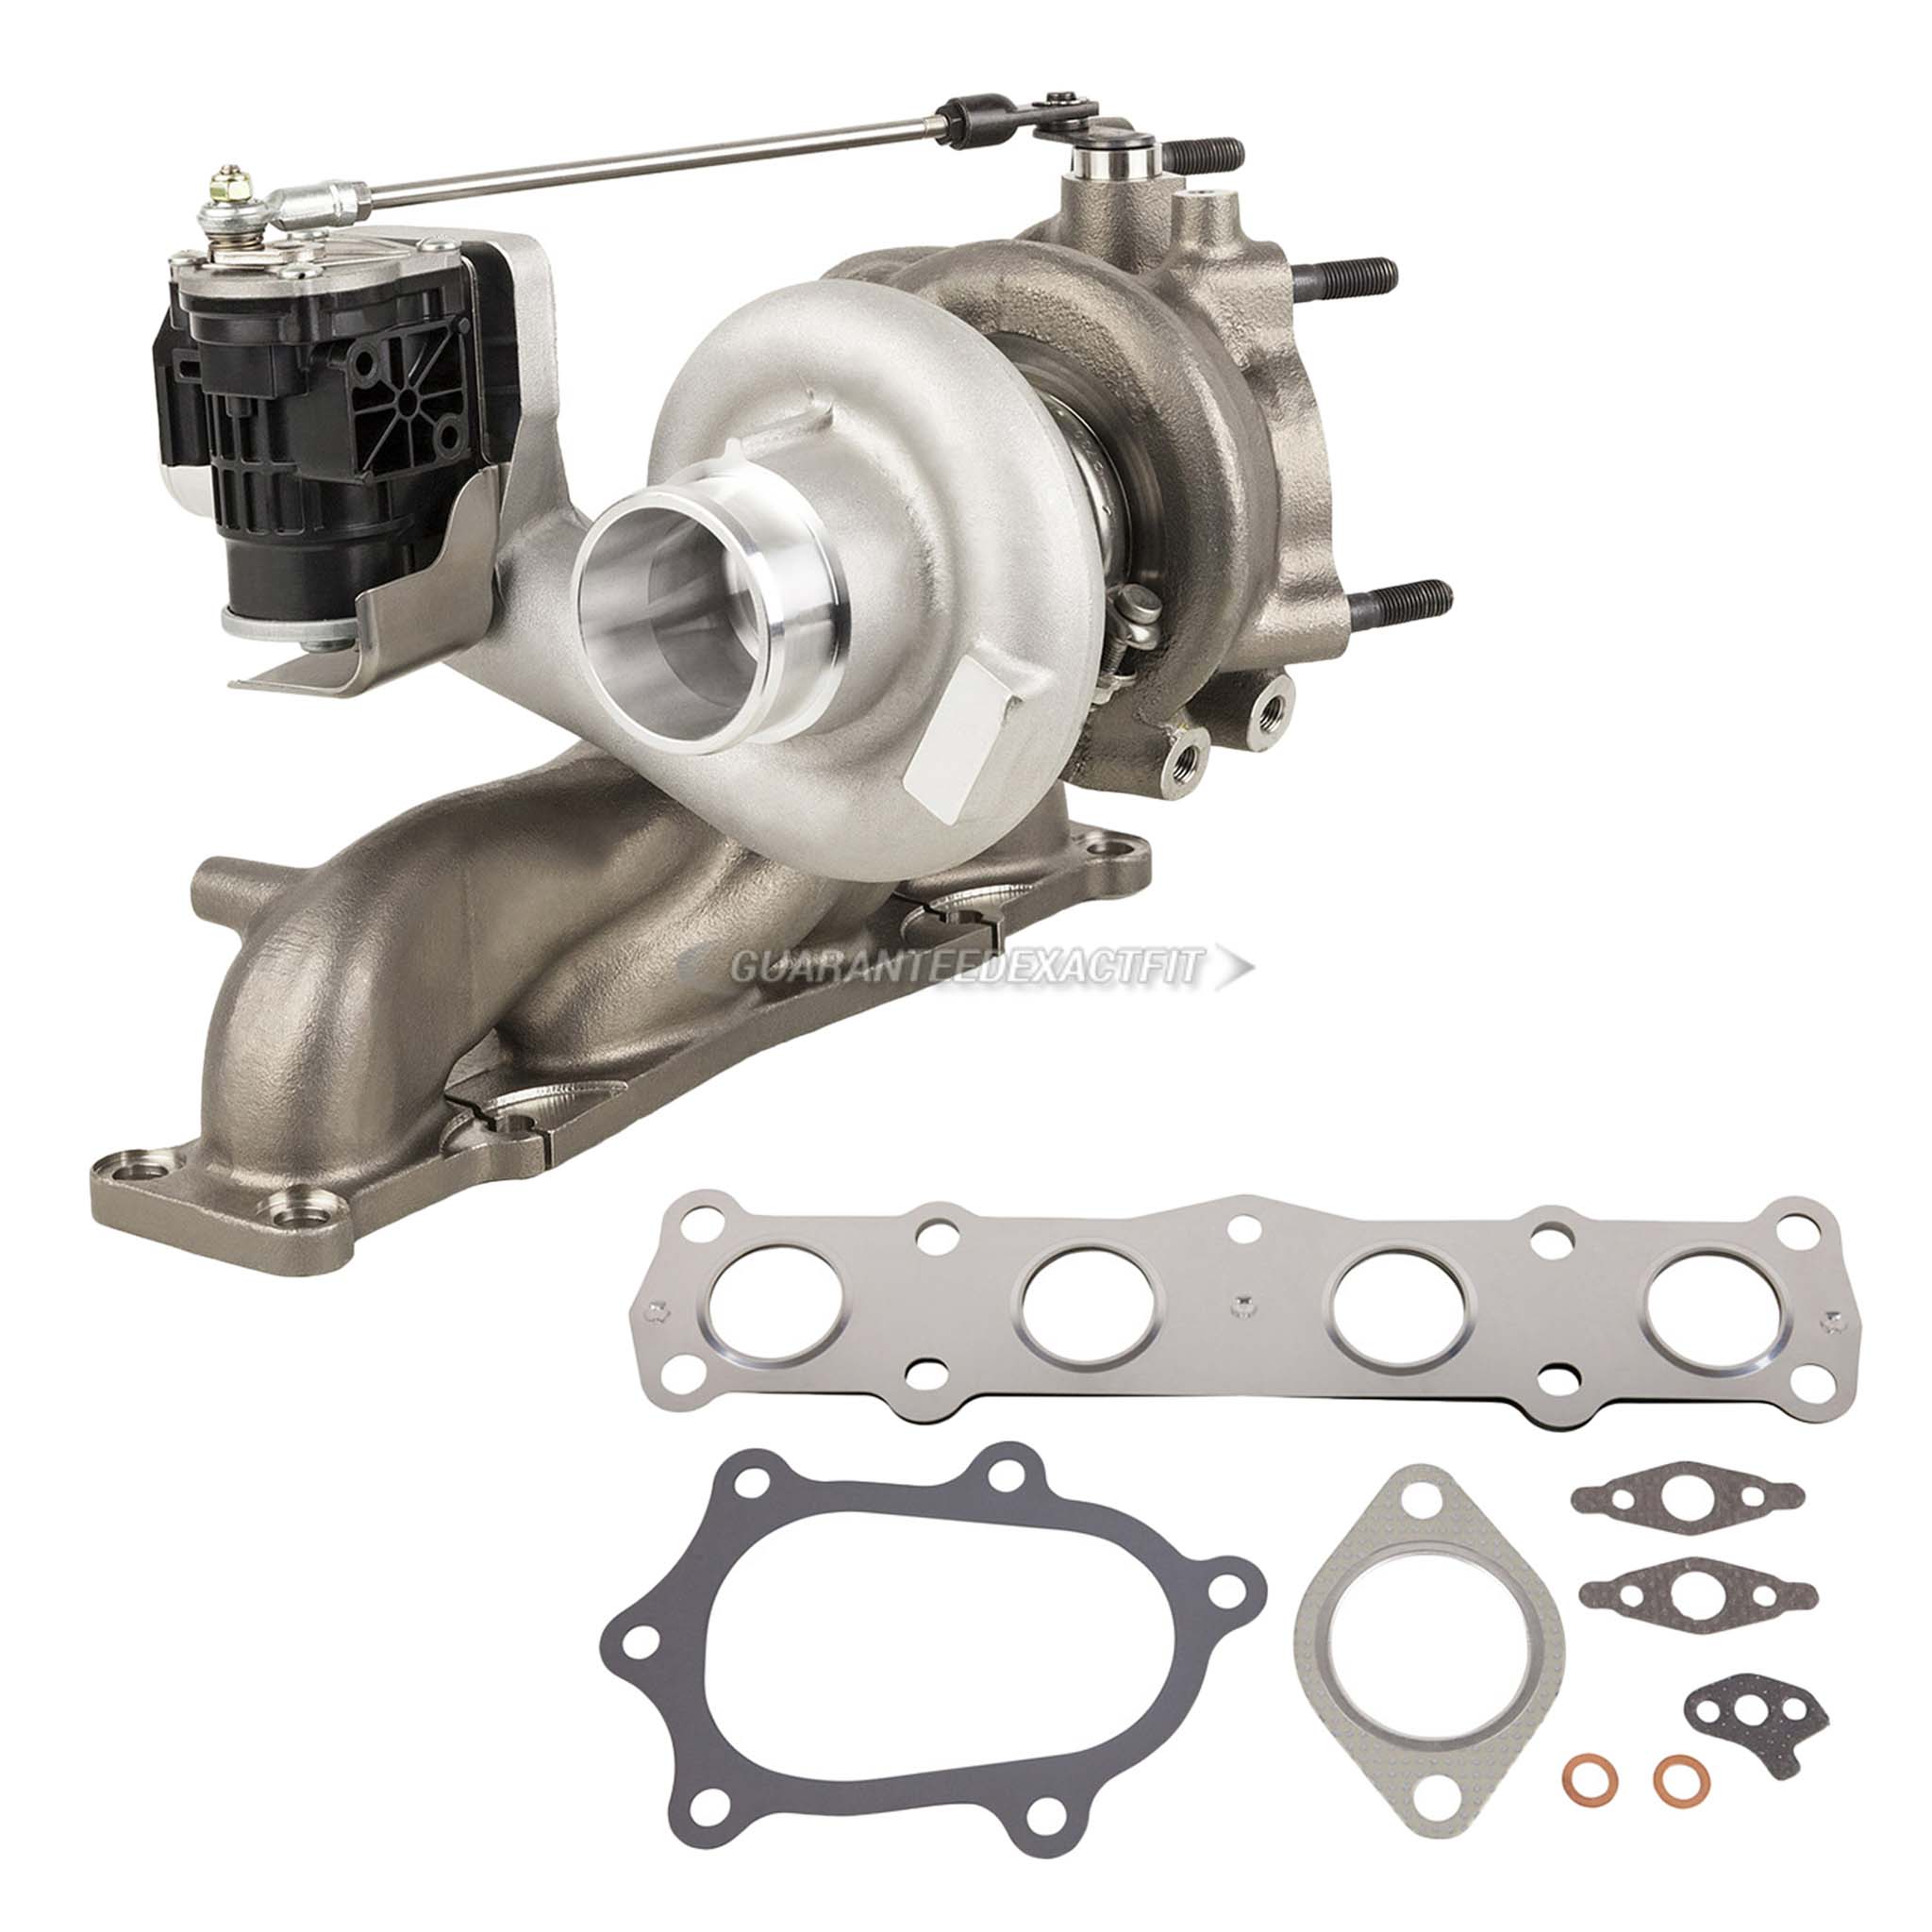 2013 Hyundai Santa Fe Sport turbocharger and installation accessory kit 